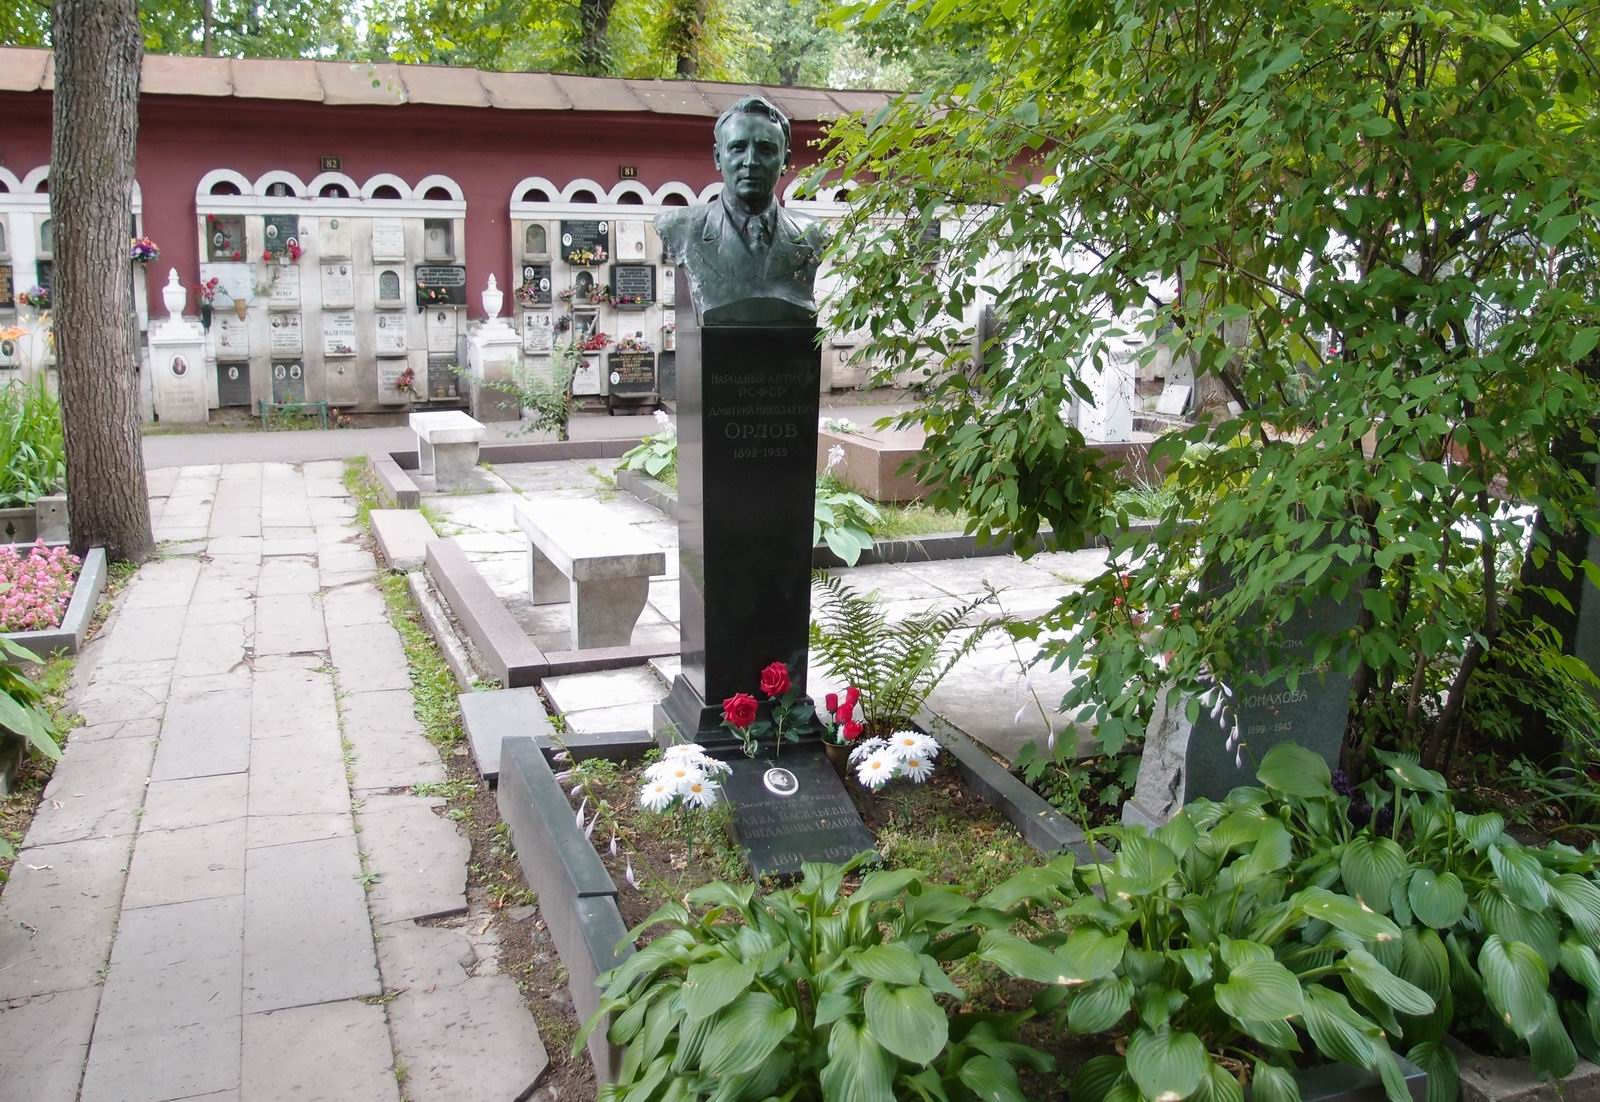 Памятник на могиле Орлова Д.Н. (1892-1955), на Новодевичьем кладбище (2-17а-11). Нажмите левую кнопку мыши чтобы увидеть фрагмент памятника.